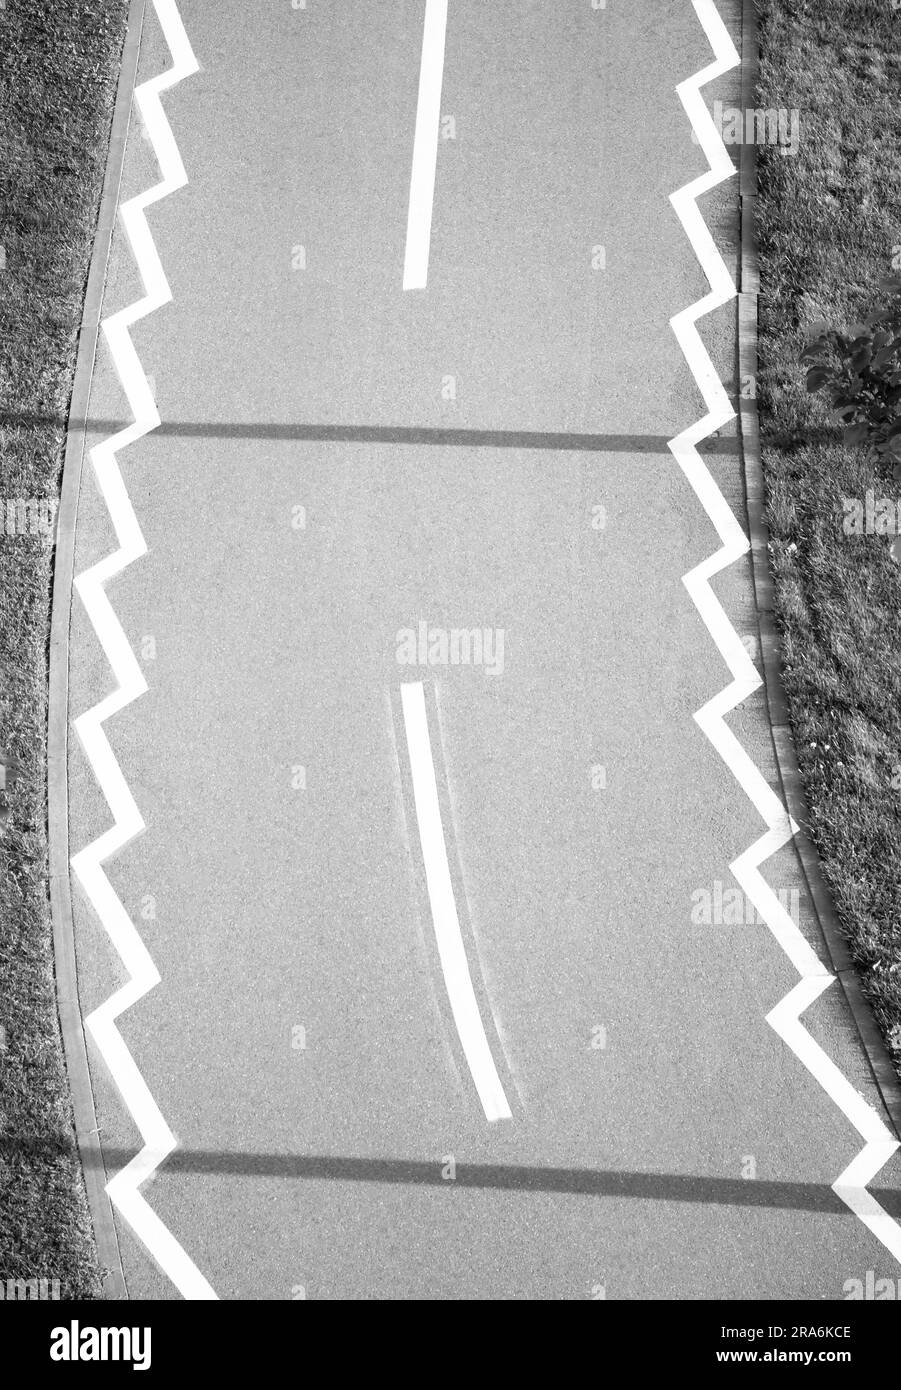 Marquages routiers sur la piste cyclable à travers le parc, par le dessus en noir et blanc Banque D'Images